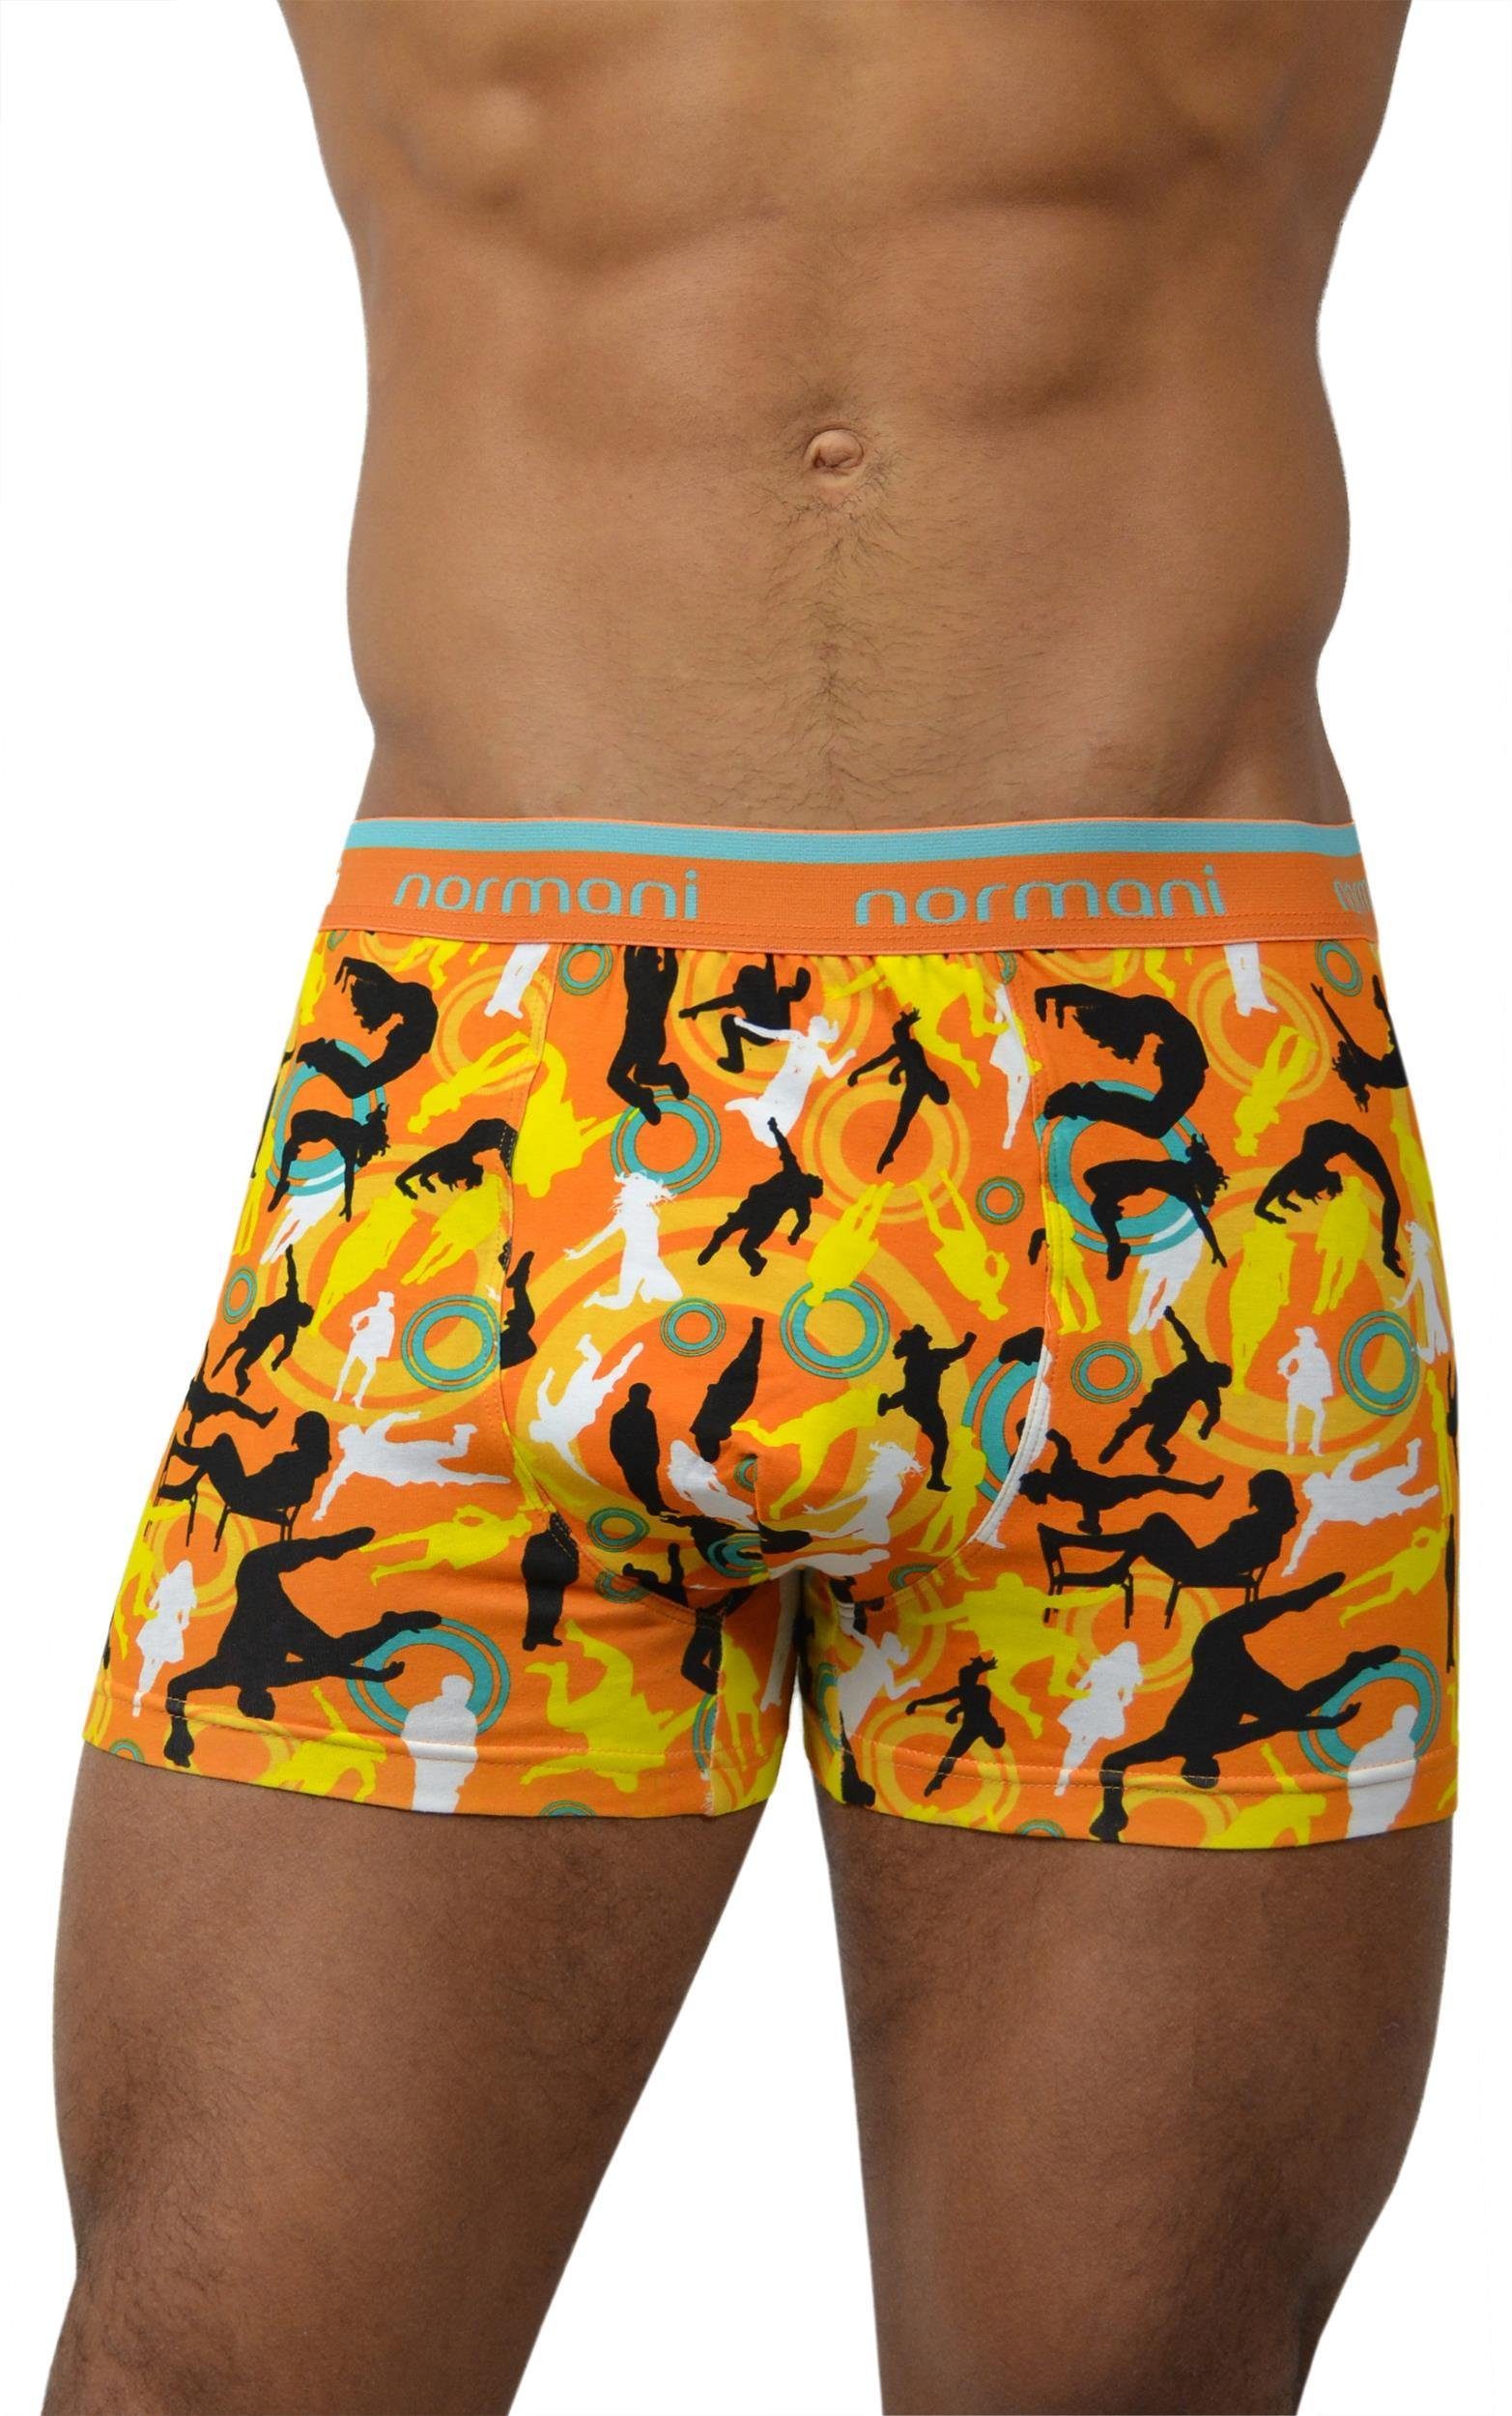 Dance Baumwolle Unterhose aus Boxer Stück 6 atmungsaktiver and Retro Style/Orange normani Boxershorts aus Retro Baumwolle